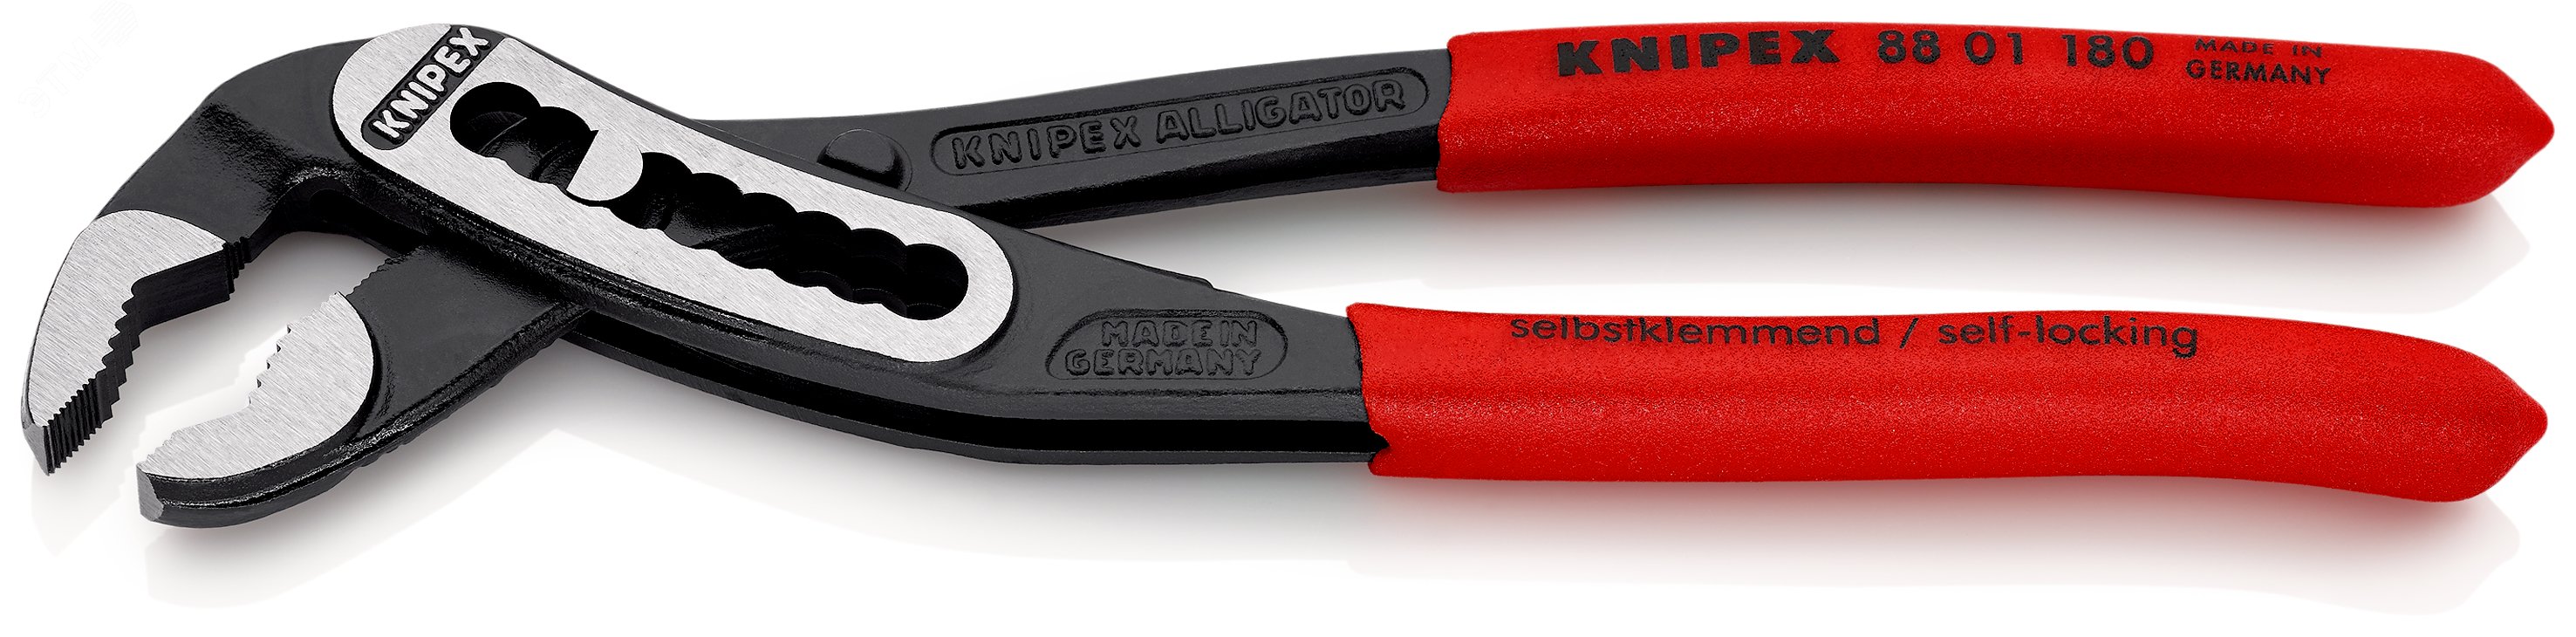 Клещи переставныеавные ALLIGATOR сантехнические 42 мм (1 1/2) под ключ 36 мм L-180 мм Cr-V серые обливные рукоятки блистер KN-8801180SB KNIPEX - превью 3